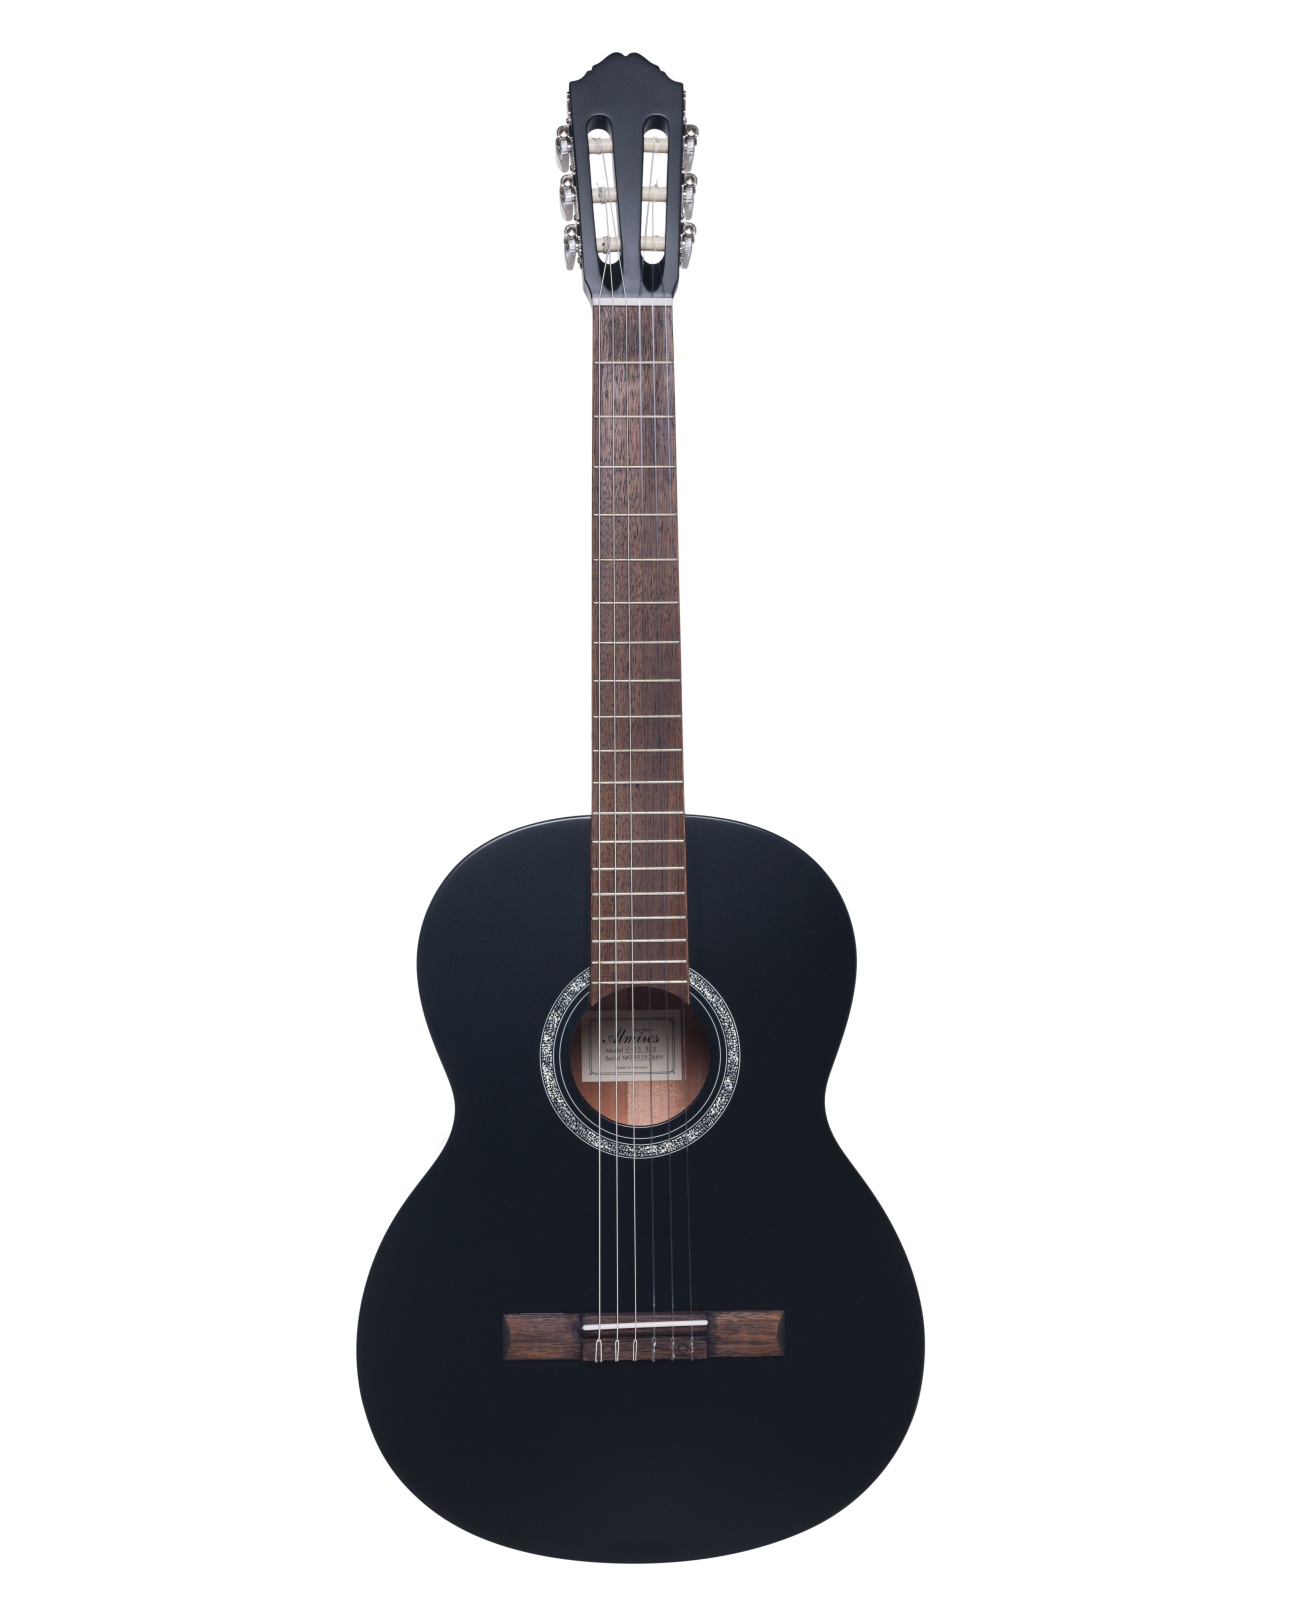 Классические гитары Almires C-15 BKS guitar fret выравнивание crowning file tool для luthier восстановление гитары обслуживание сменной шлифовальной бумаги